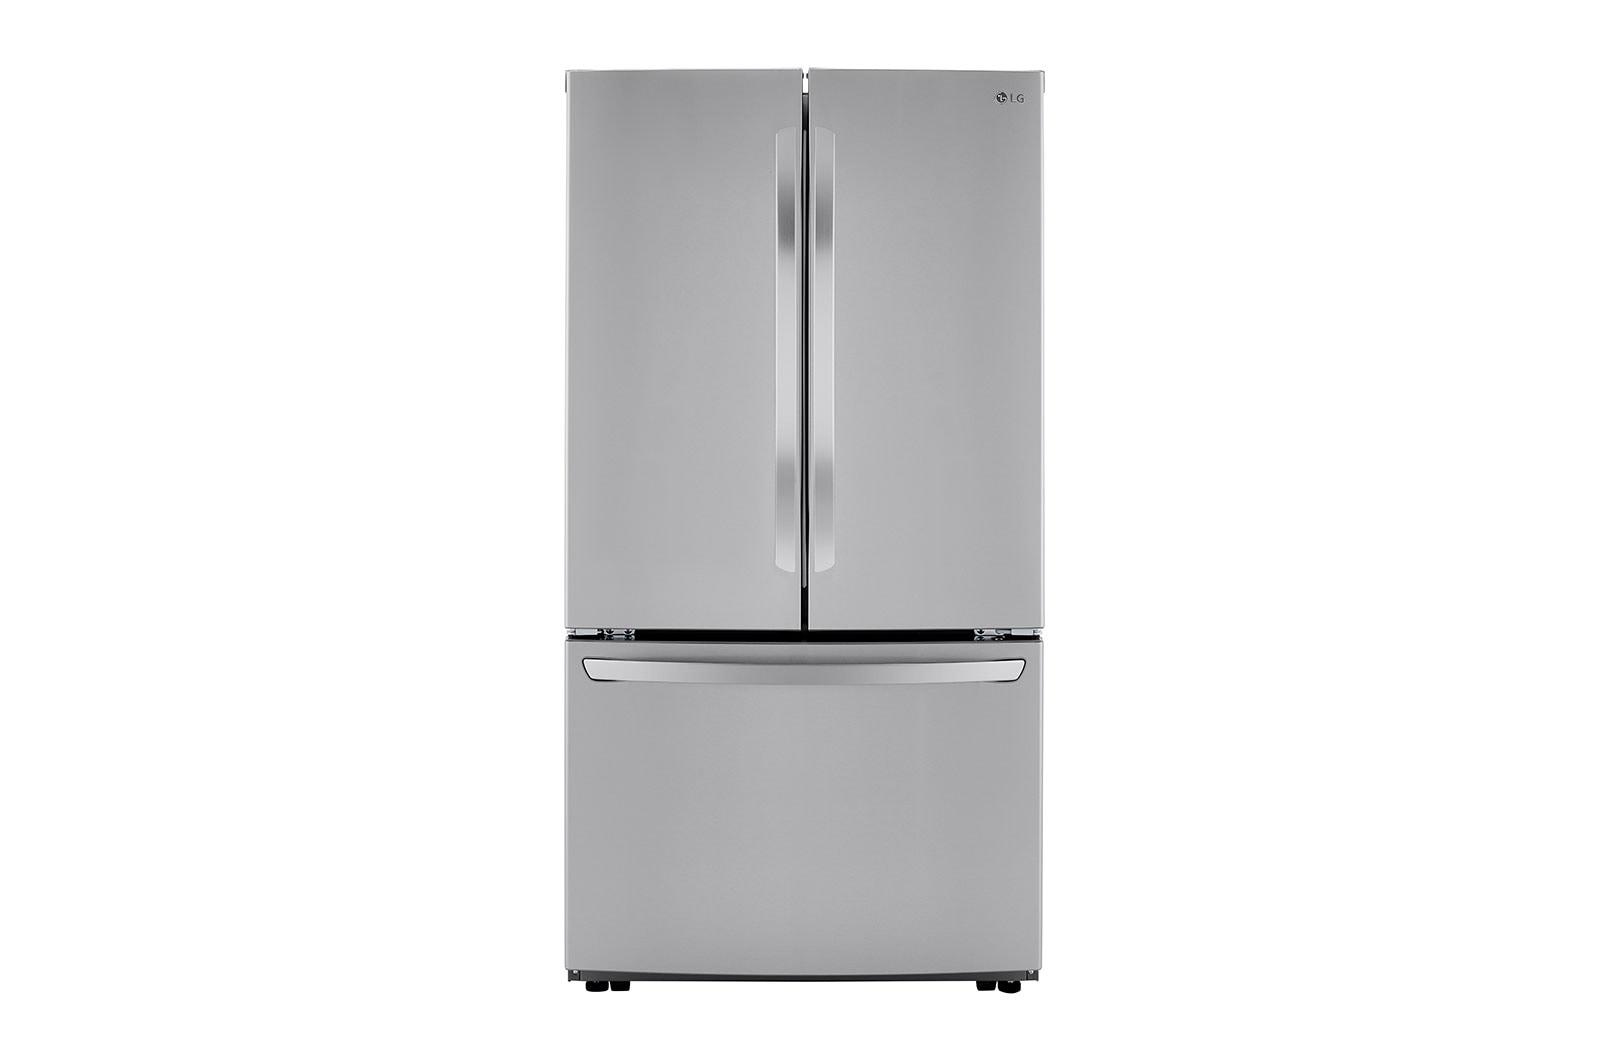 Lg LRFCS29D6S 29 Cu. Ft. Smart French Door Refrigerator